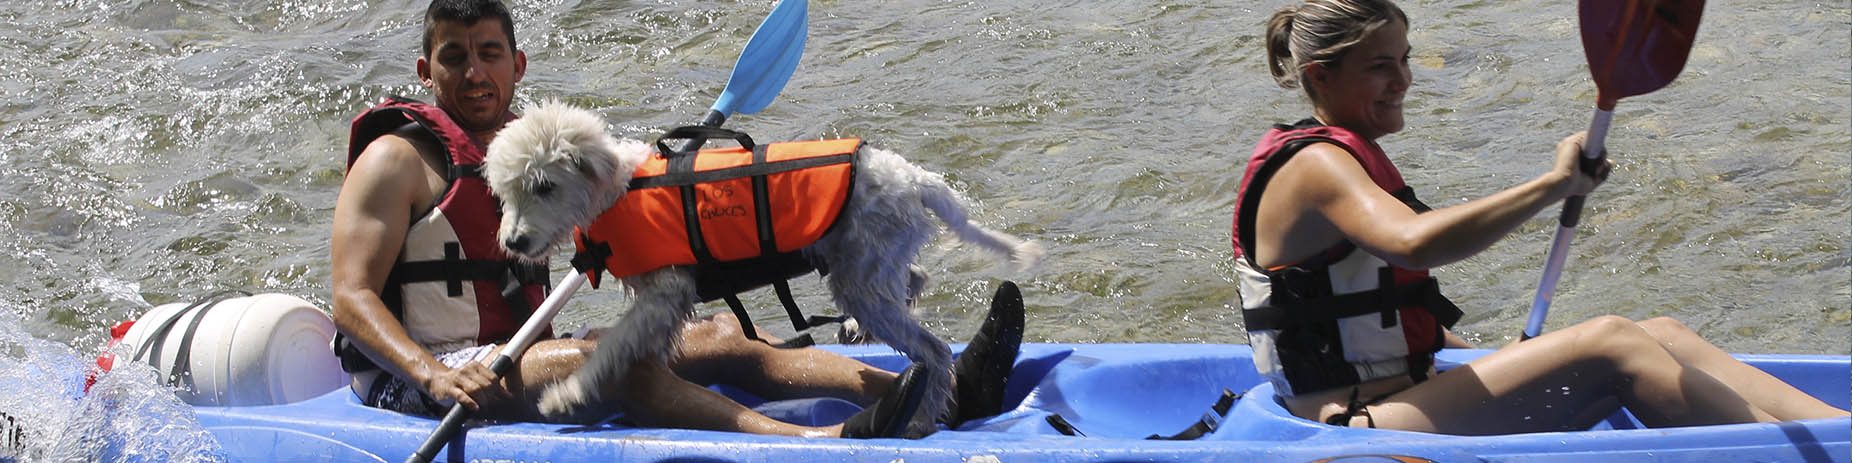 Descenso del sella con perro - Cuáles son las medidas de una canoa estándar